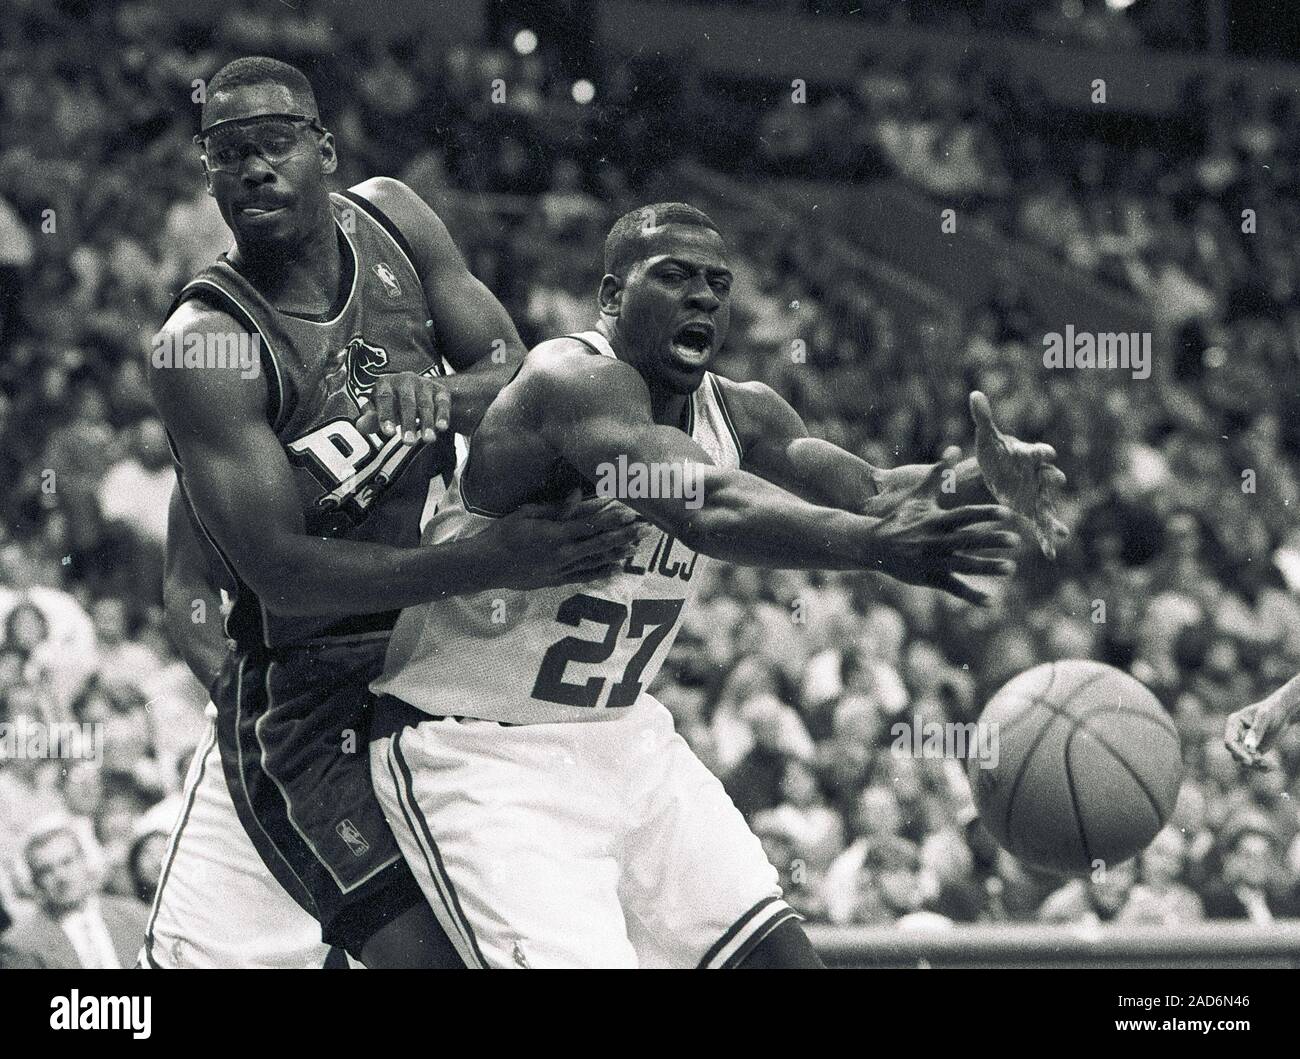 Detroit Pistons gewähren Lange fouls Boston Celtics Nate Driggers im Basketball  spiel action im Fleet Center in Boston, Ma USA Jahreszeit 1996-97 Foto von  Bill belknap Stockfotografie - Alamy